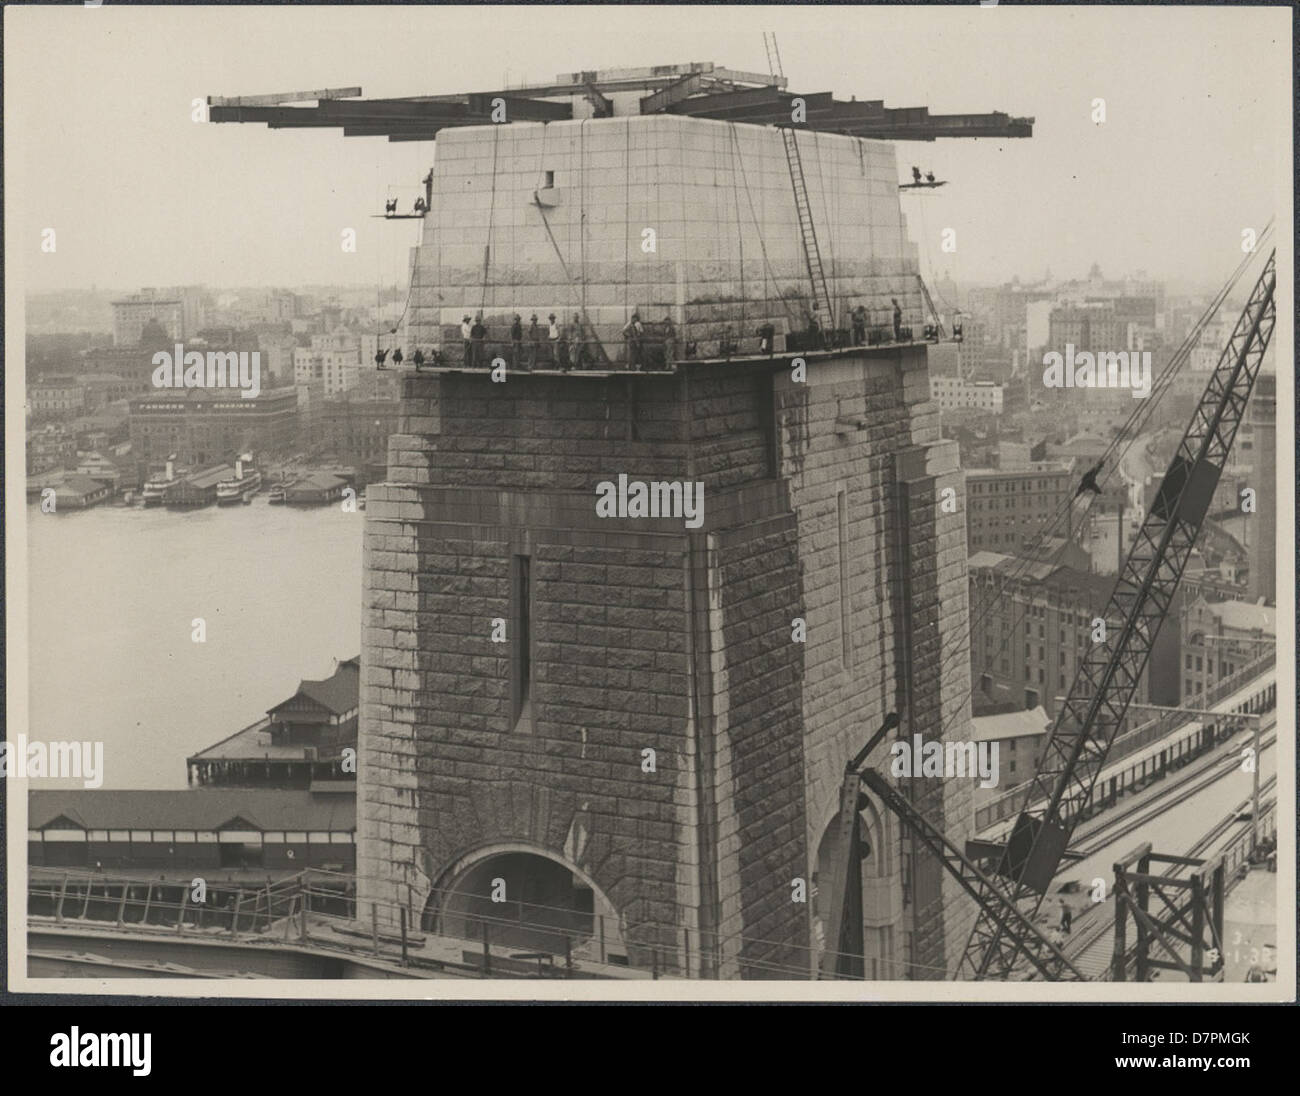 87/1353-97 impression photographique, vue du sud de la pylône du Sydney Harbour Bridge, de l'argent / gélatine / papier, photographie de la Nouvelle Galles du sud Ministère des Travaux publics, Sydney, Australie, Janvier, 1932 Banque D'Images